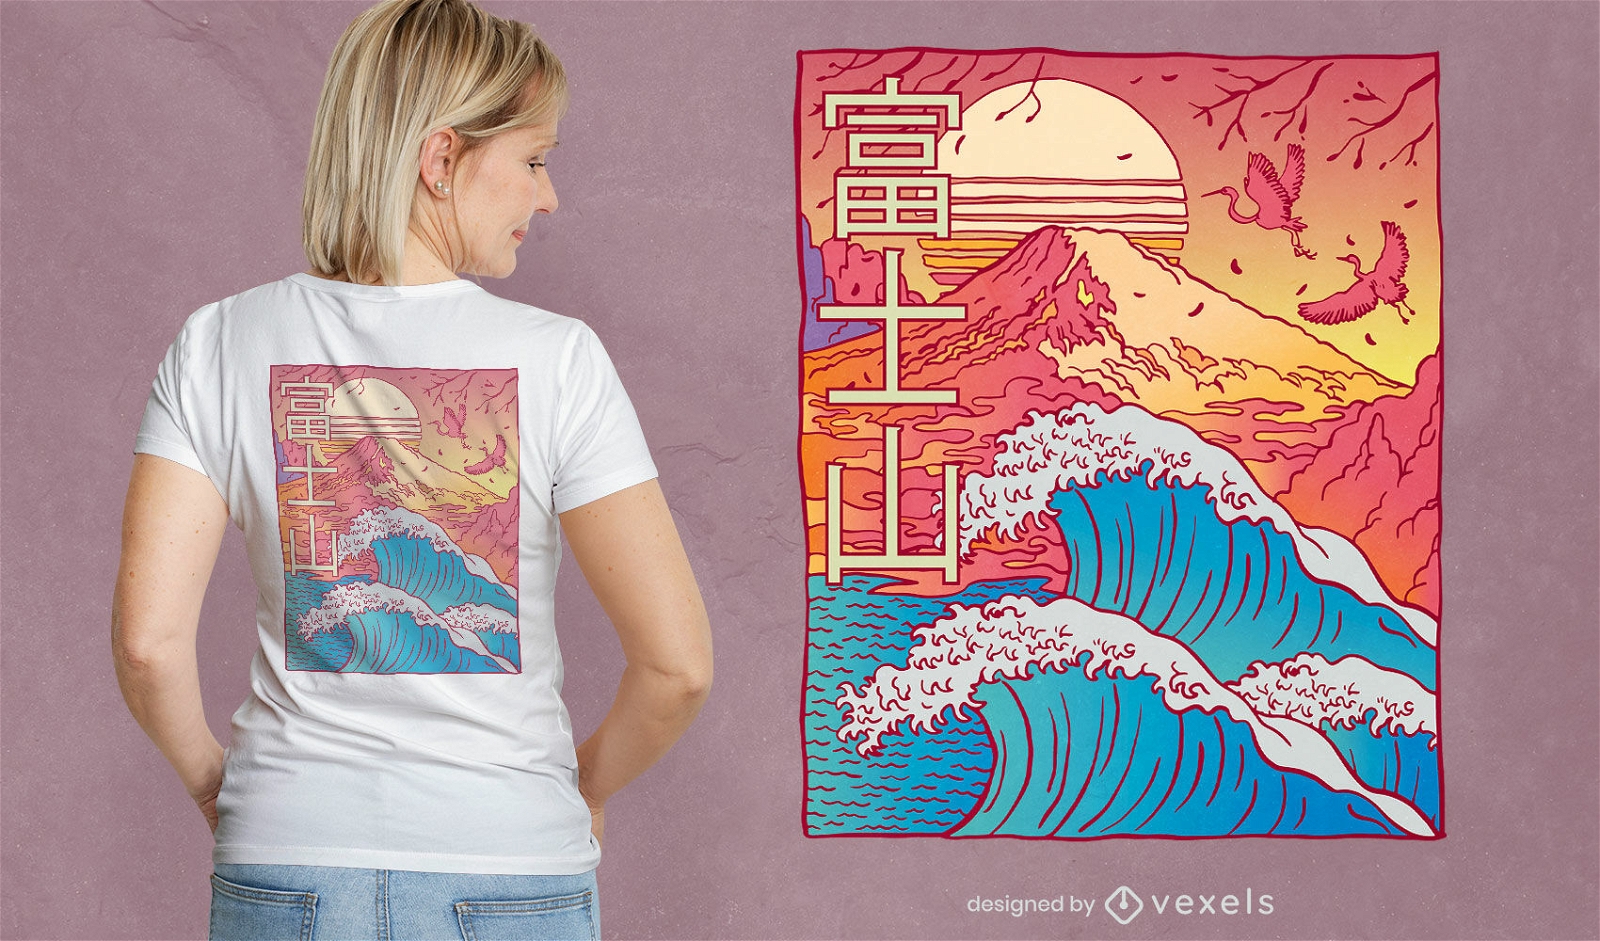 Dise?o de camiseta del monte fuji y las olas del oc?ano.